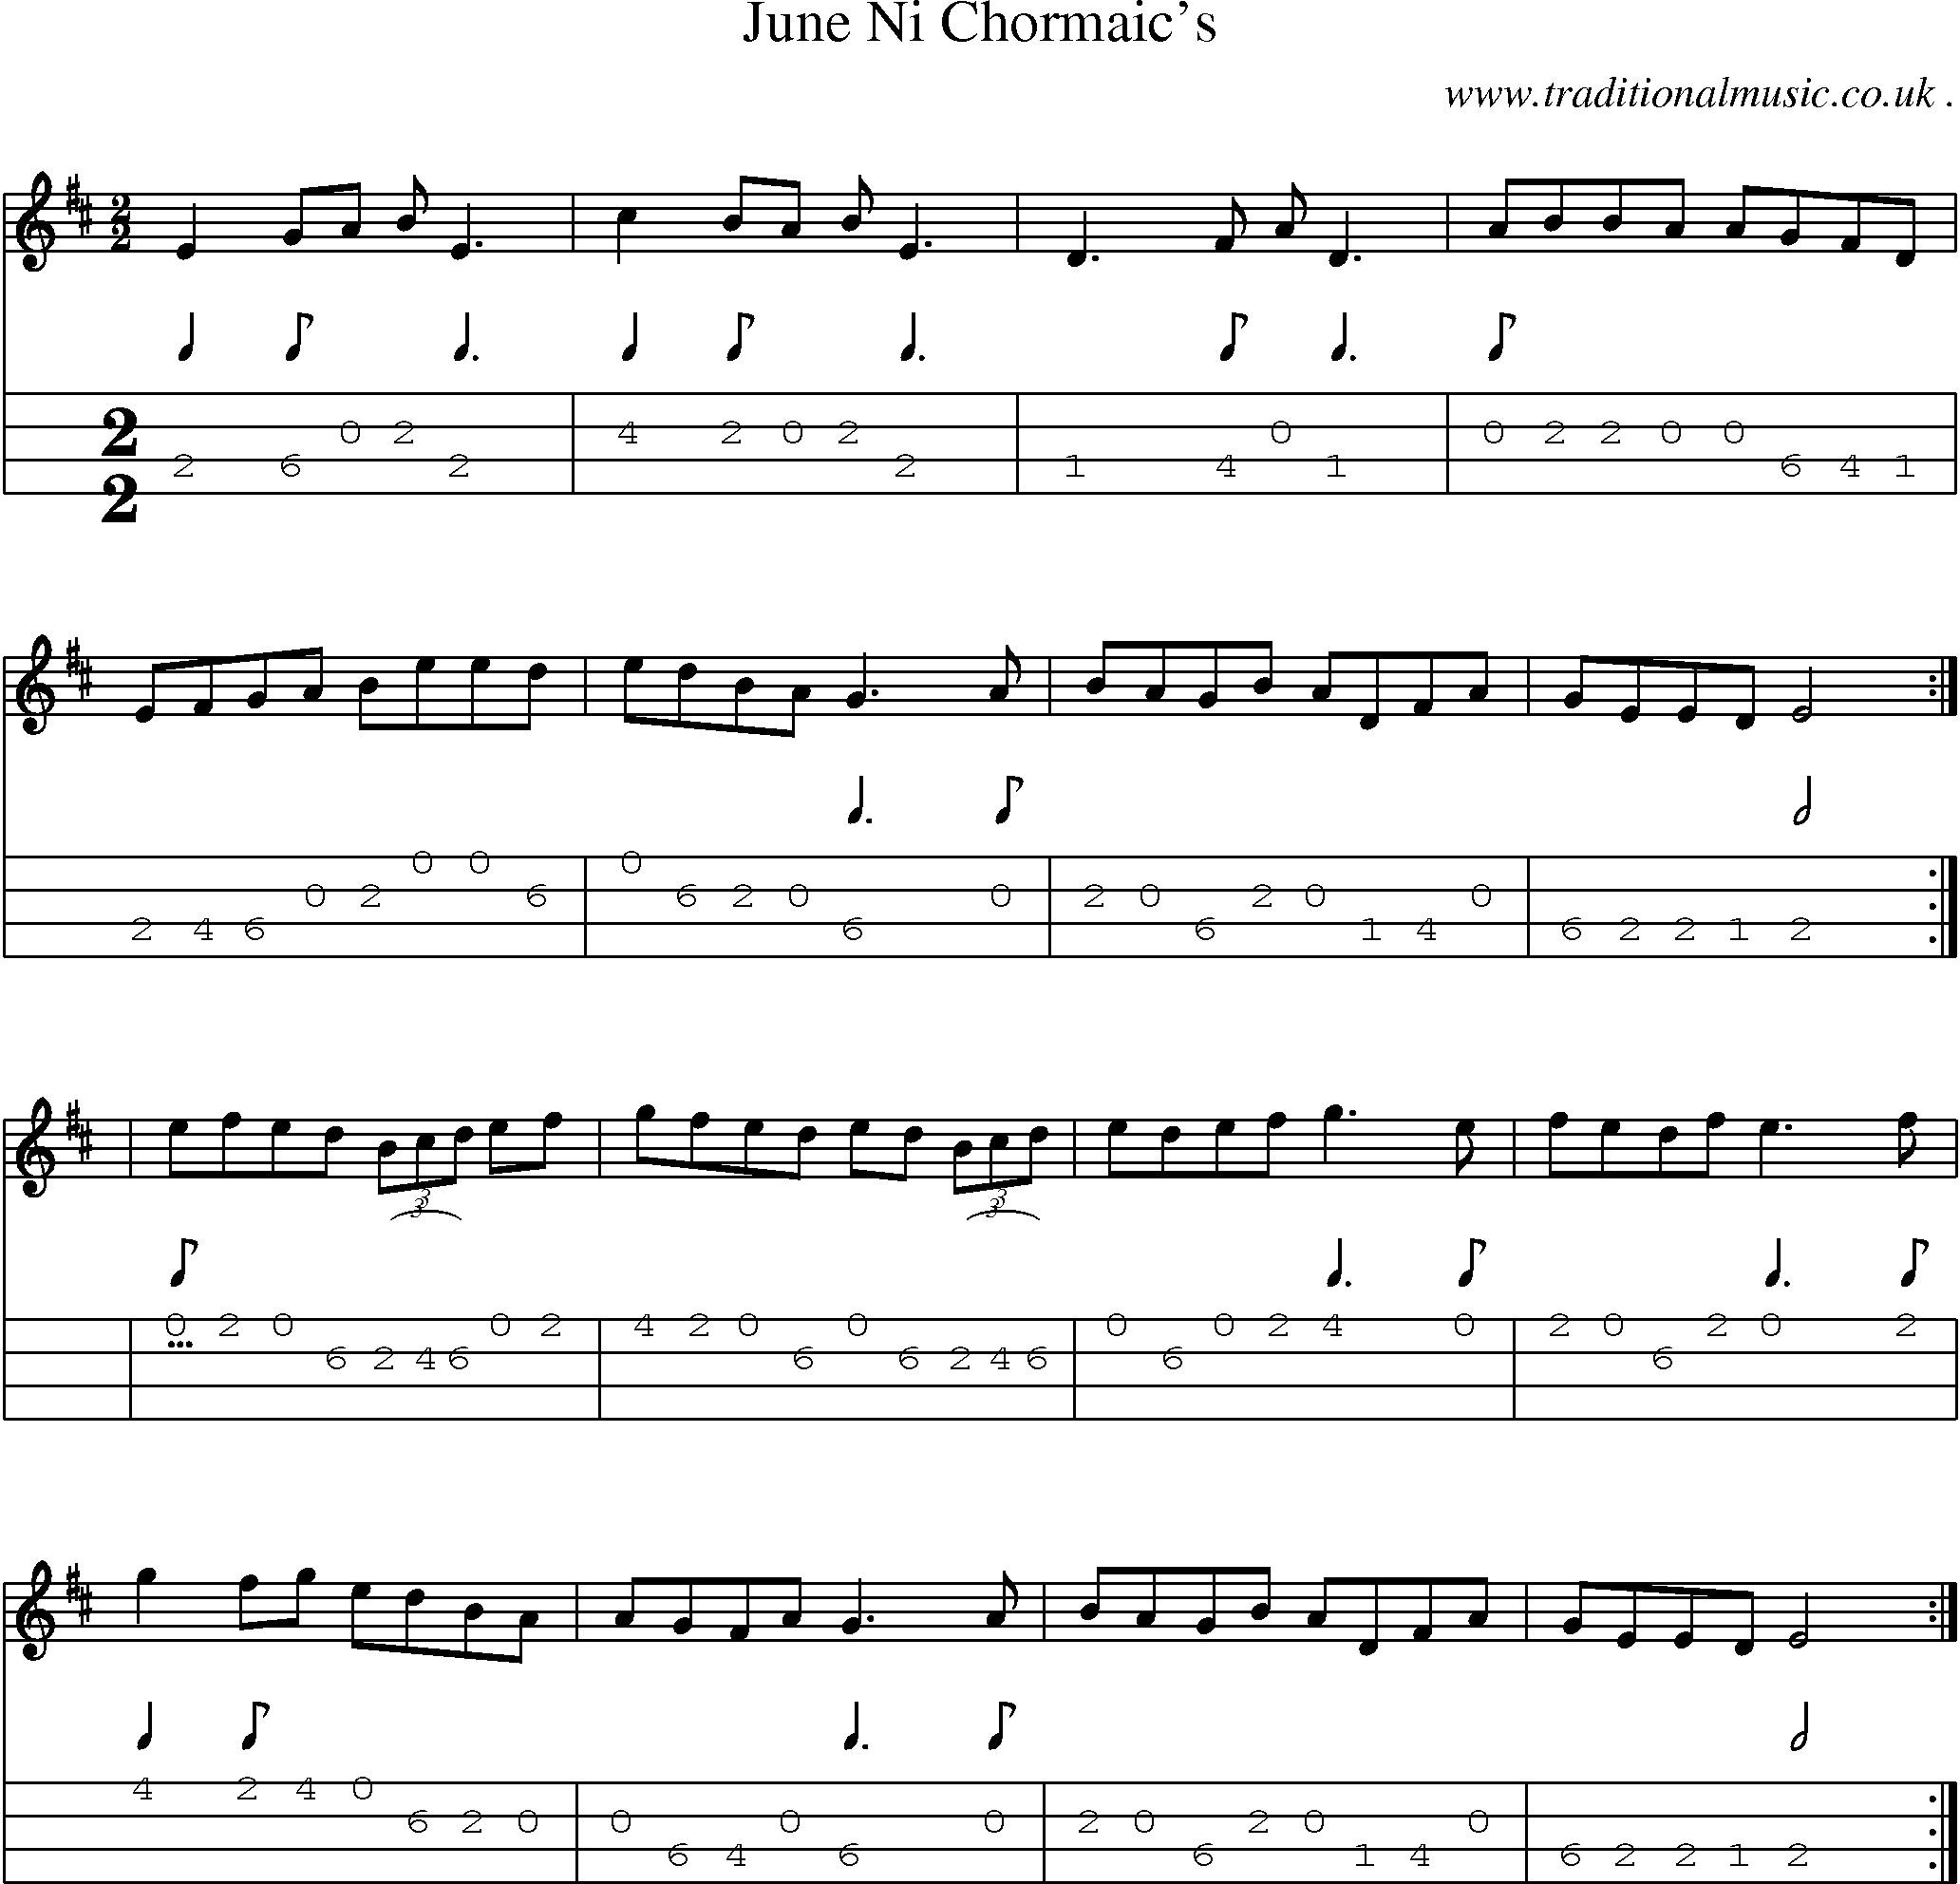 Sheet-Music and Mandolin Tabs for June Ni Chormaics